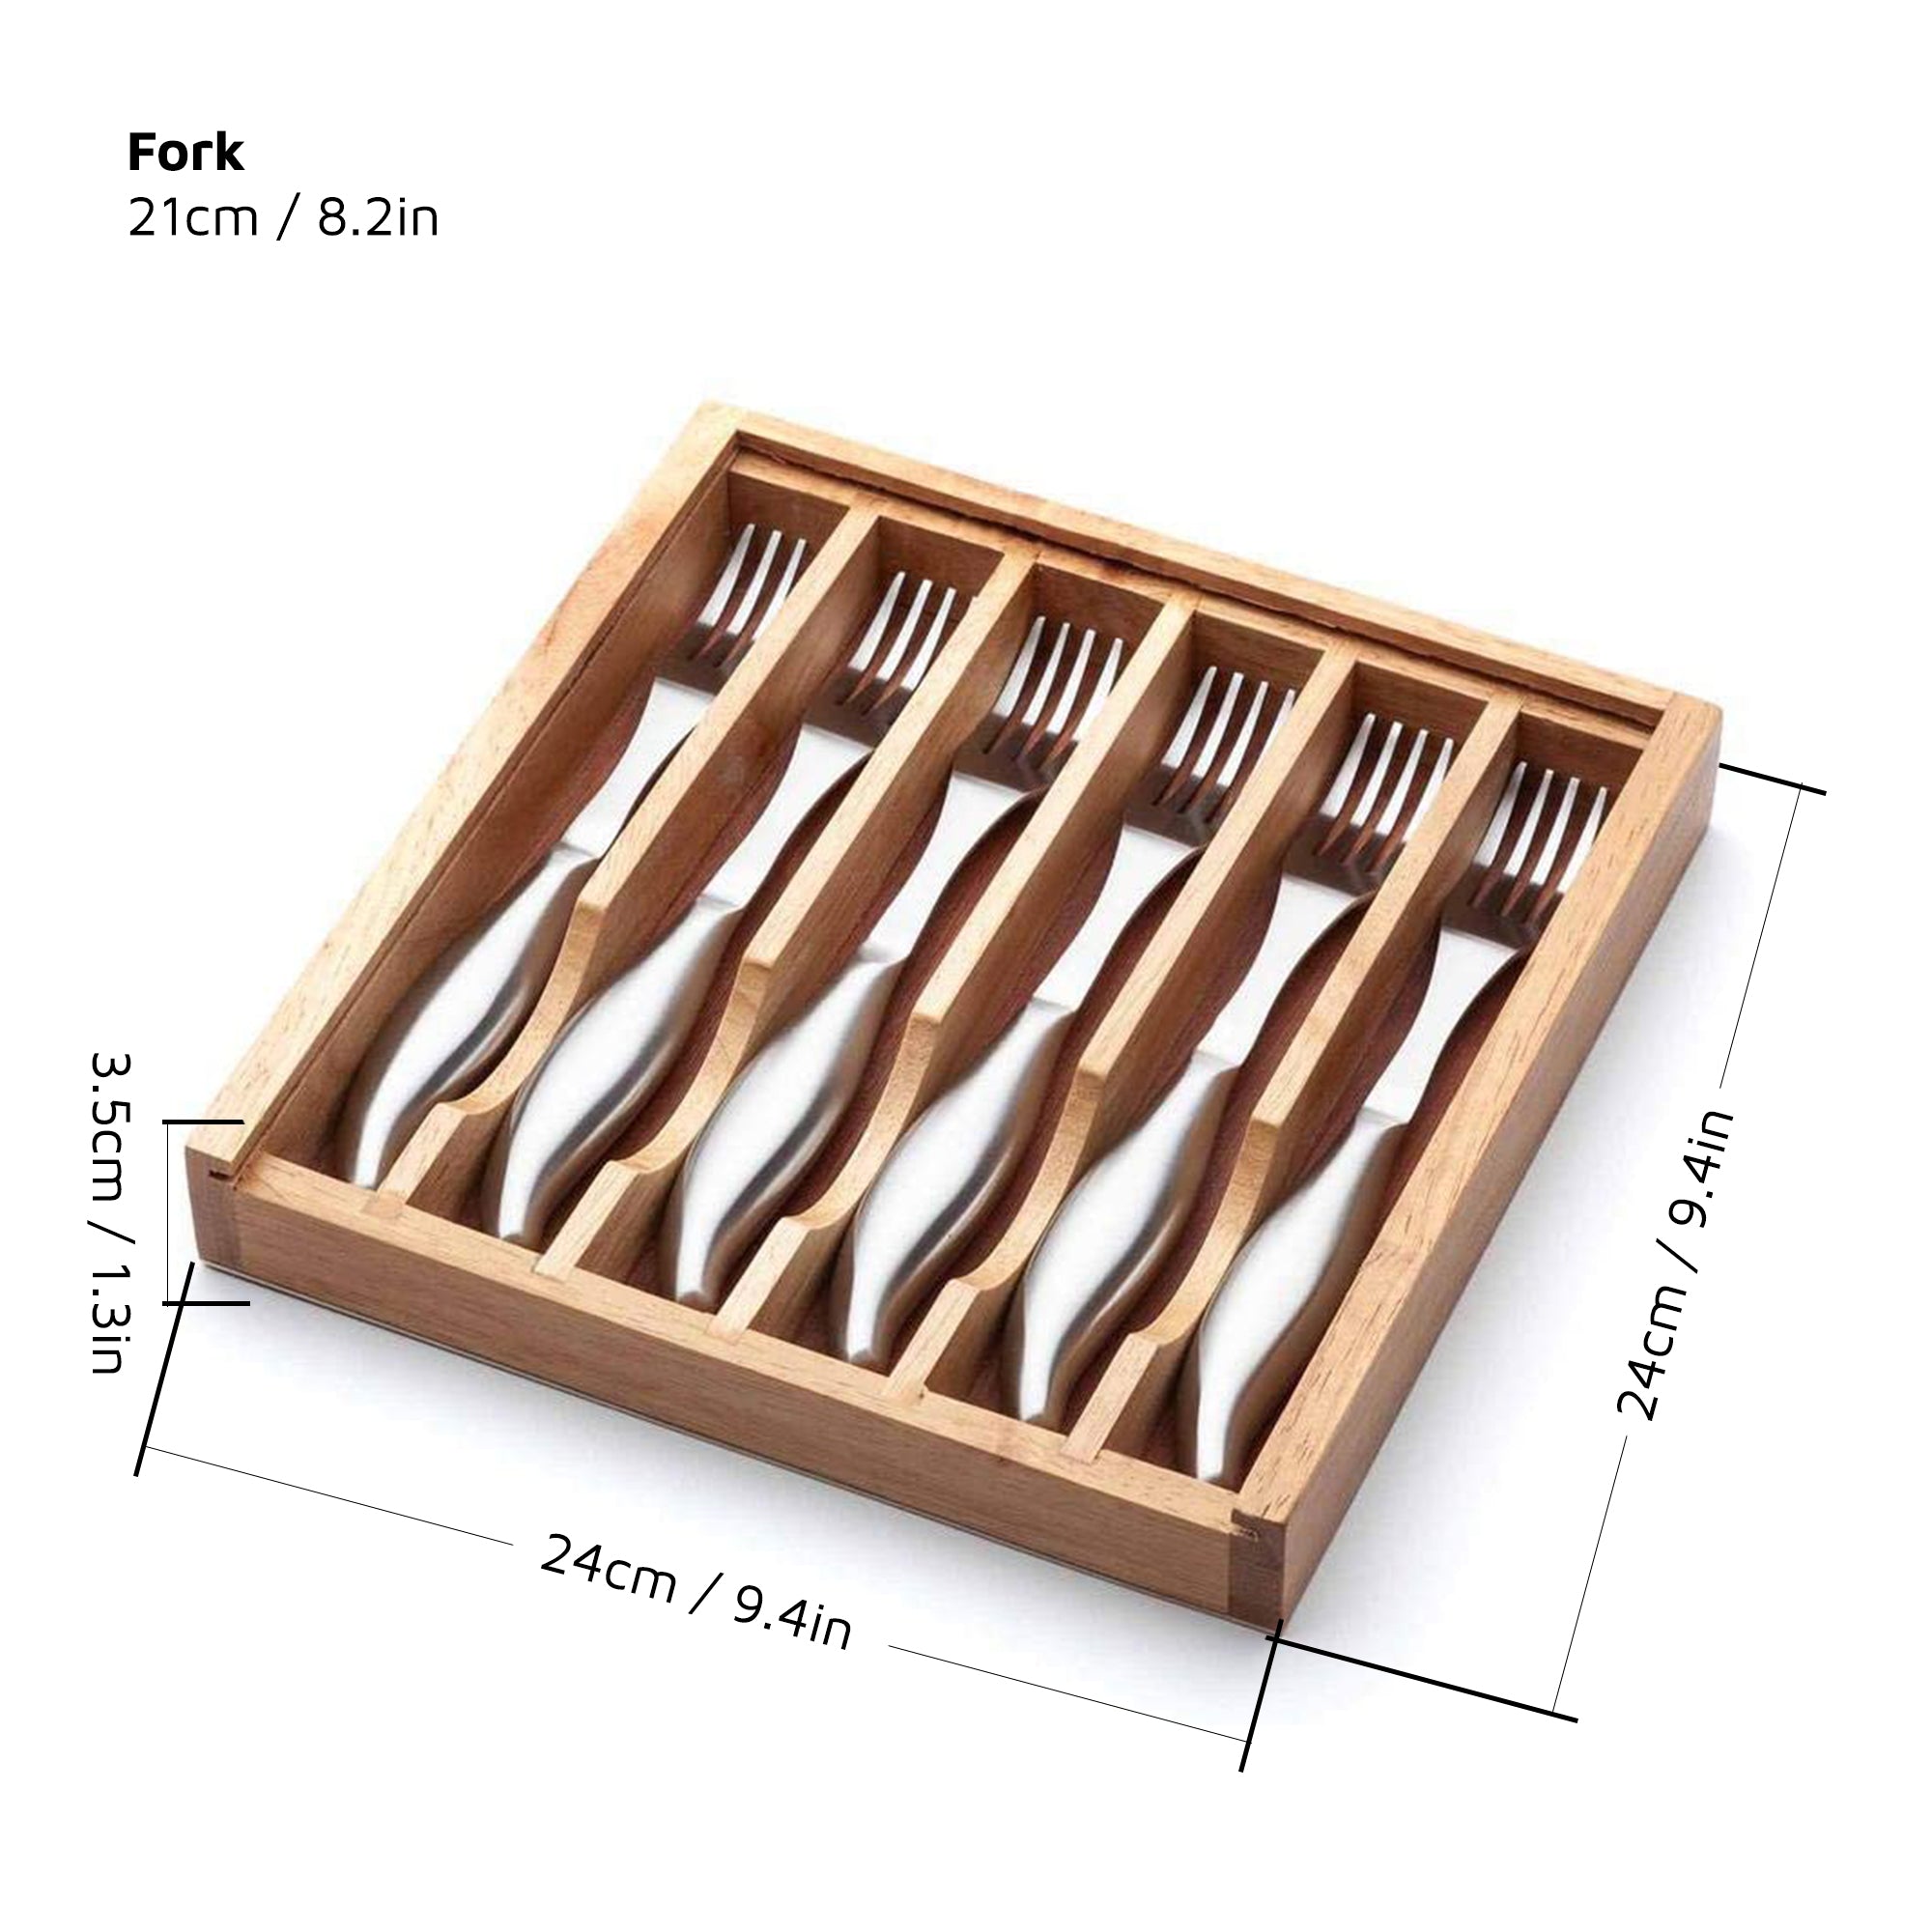 6-Piece Stainless Steel Steak Fork Set